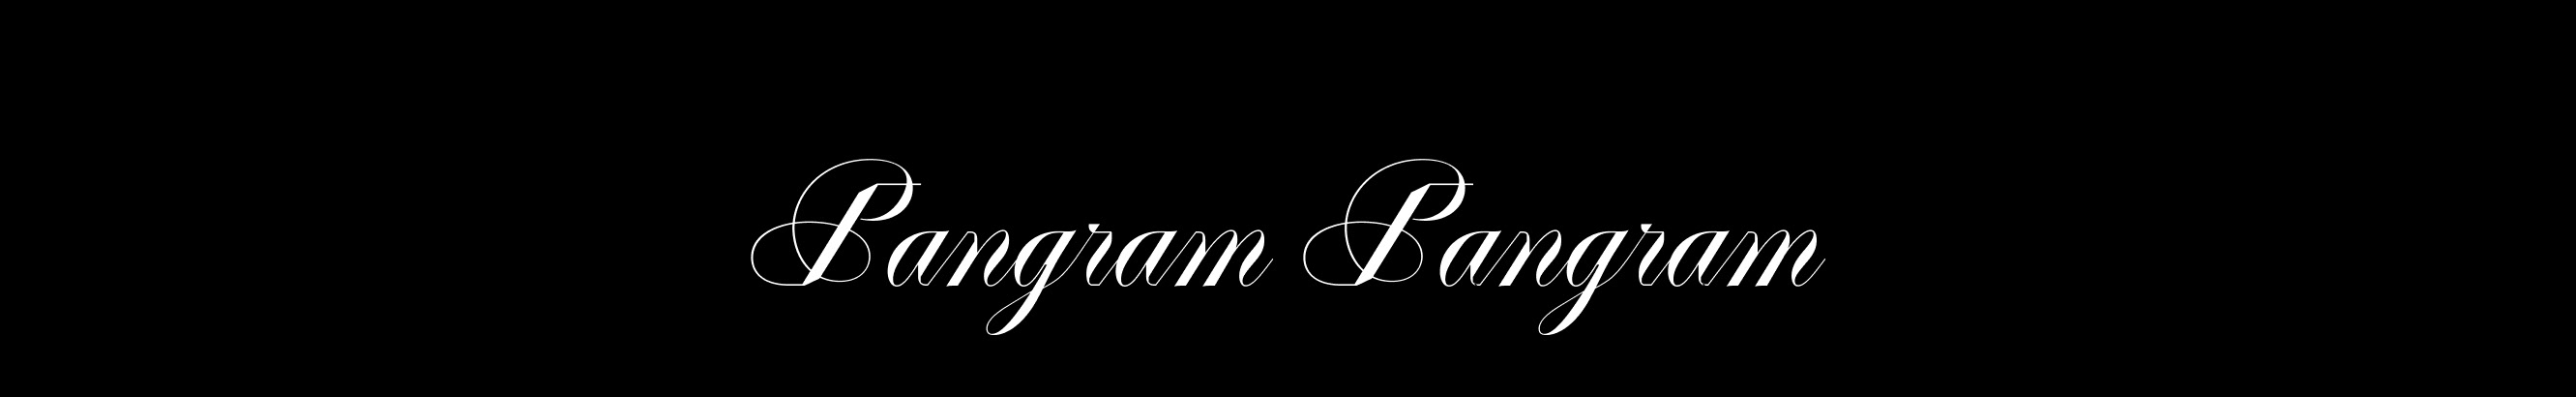 Pangram Pangram®'s profile banner